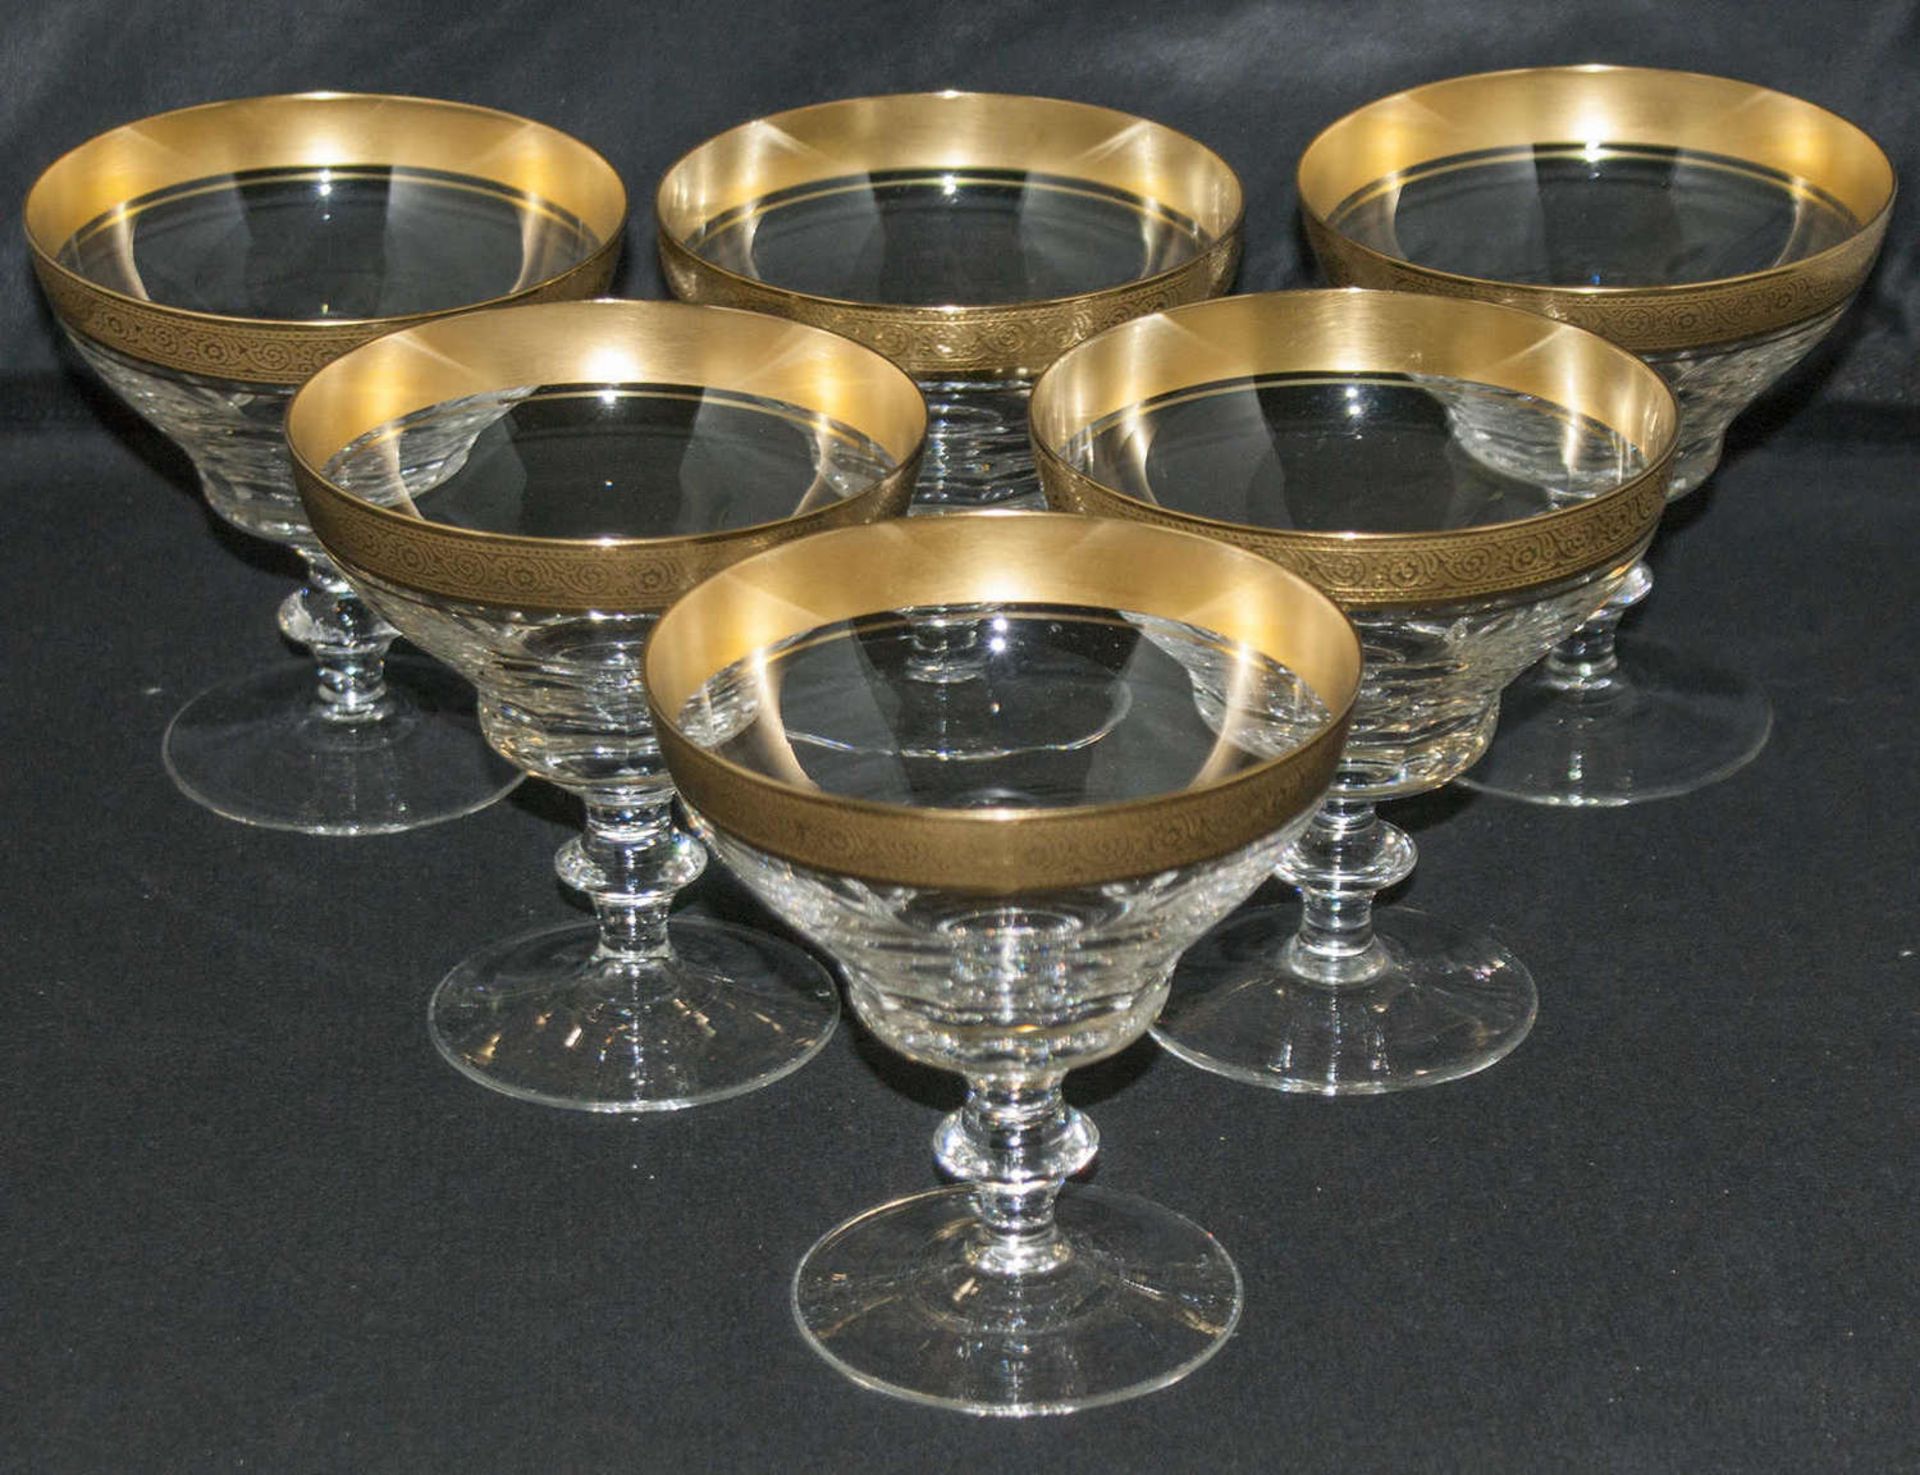 Theresienthal Conconde Mintonborde, Gläser Set mit Goldrelief. 6 Champagnerkelche. Sehr guter